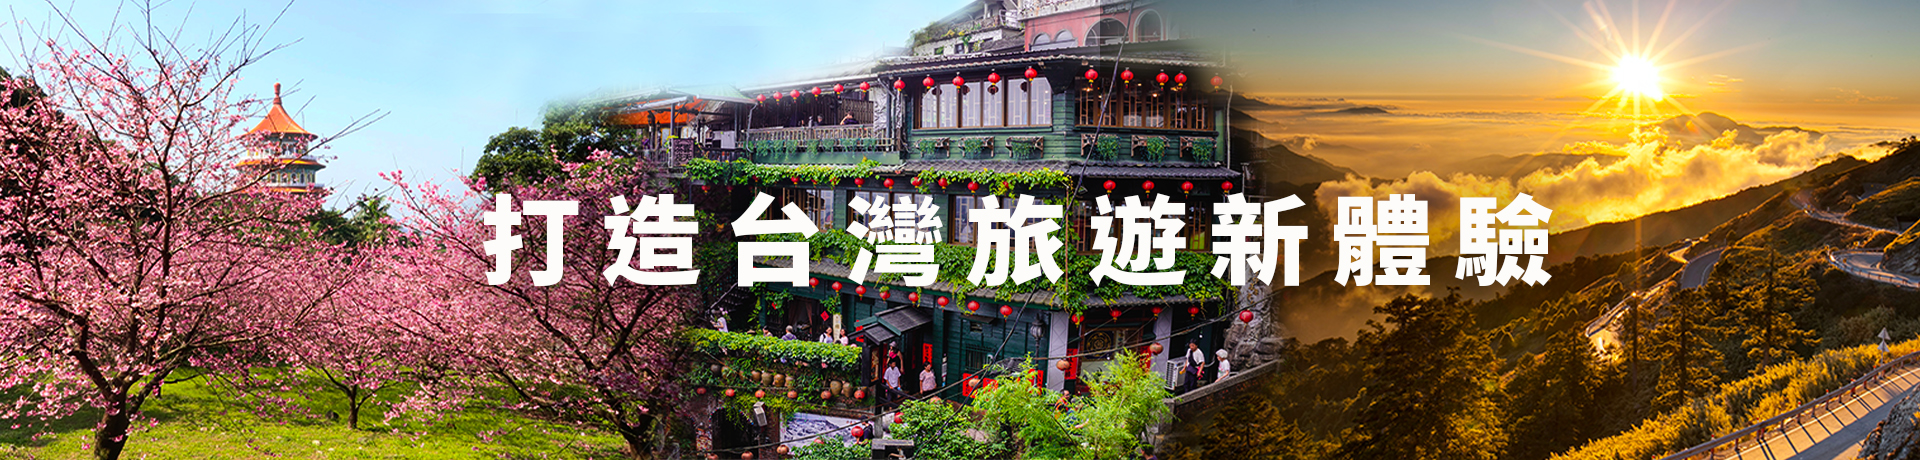 國內旅遊-打造台灣旅遊新體驗